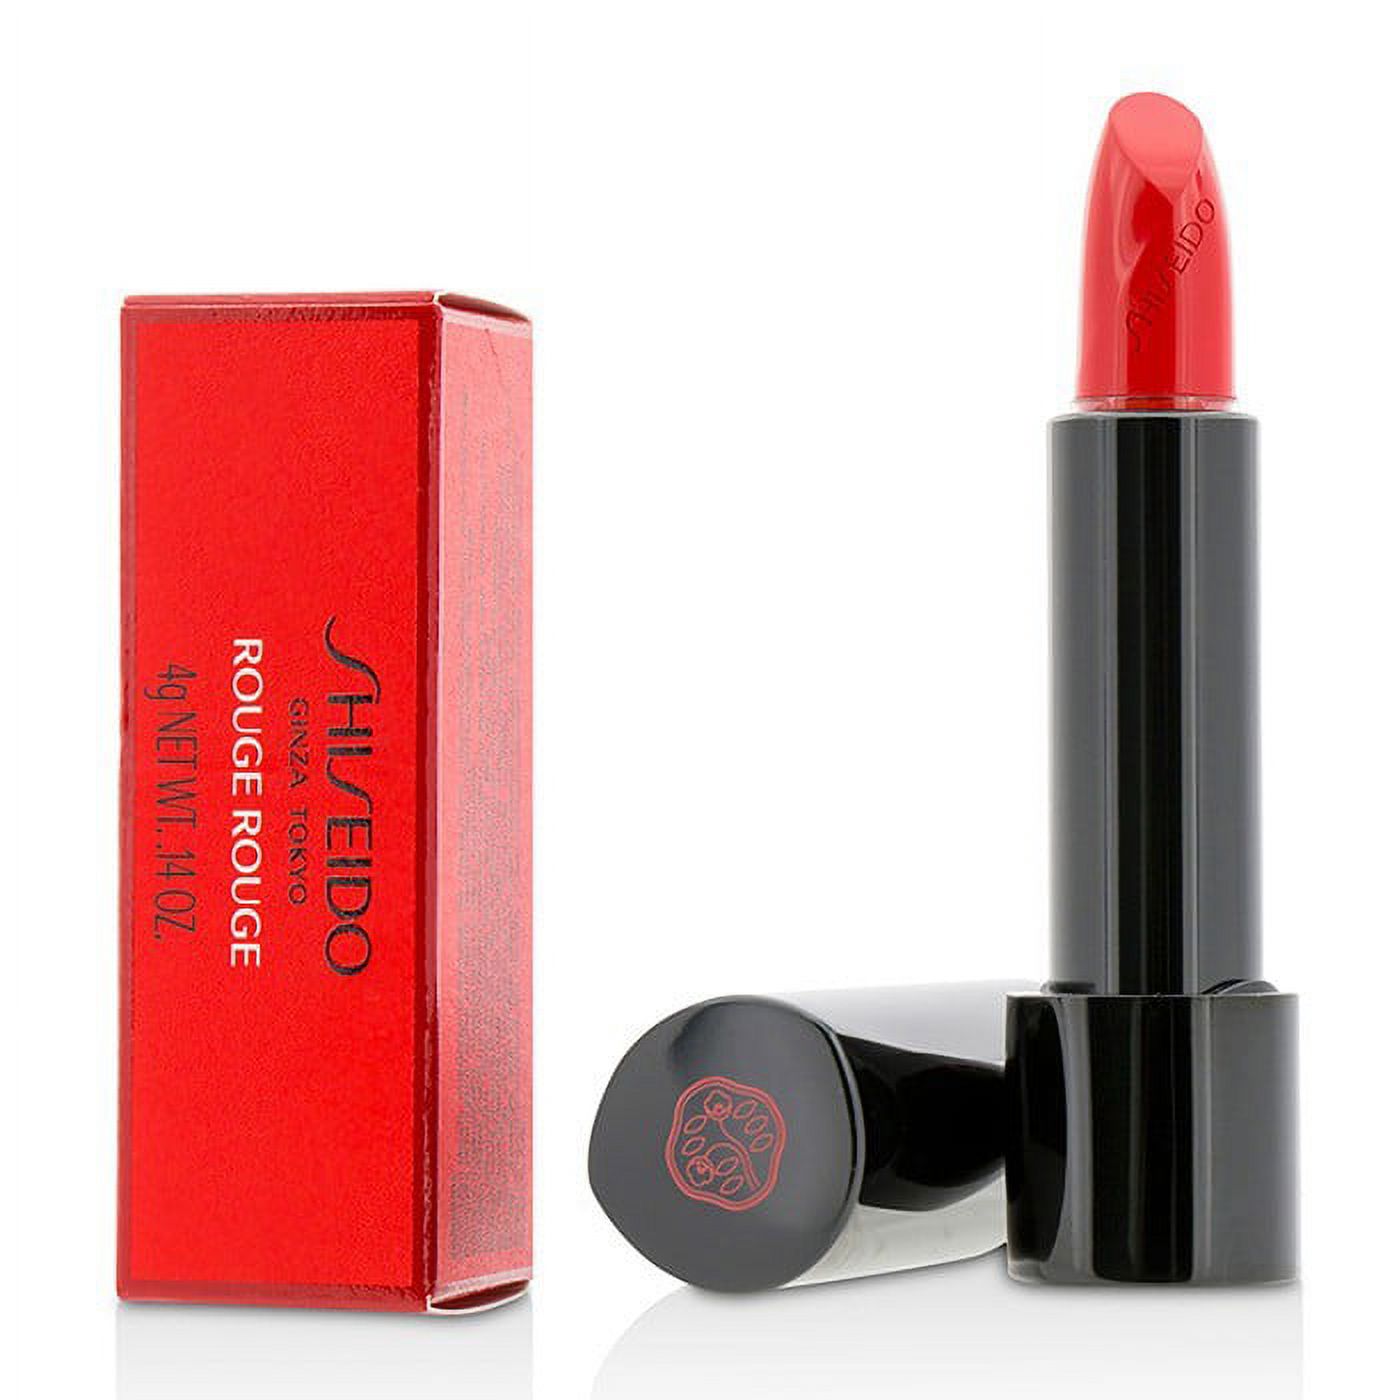 Shiseido Rouge Rouge Lipstick - # RD312 Poppy 0.14 oz Lipstick - image 1 of 3